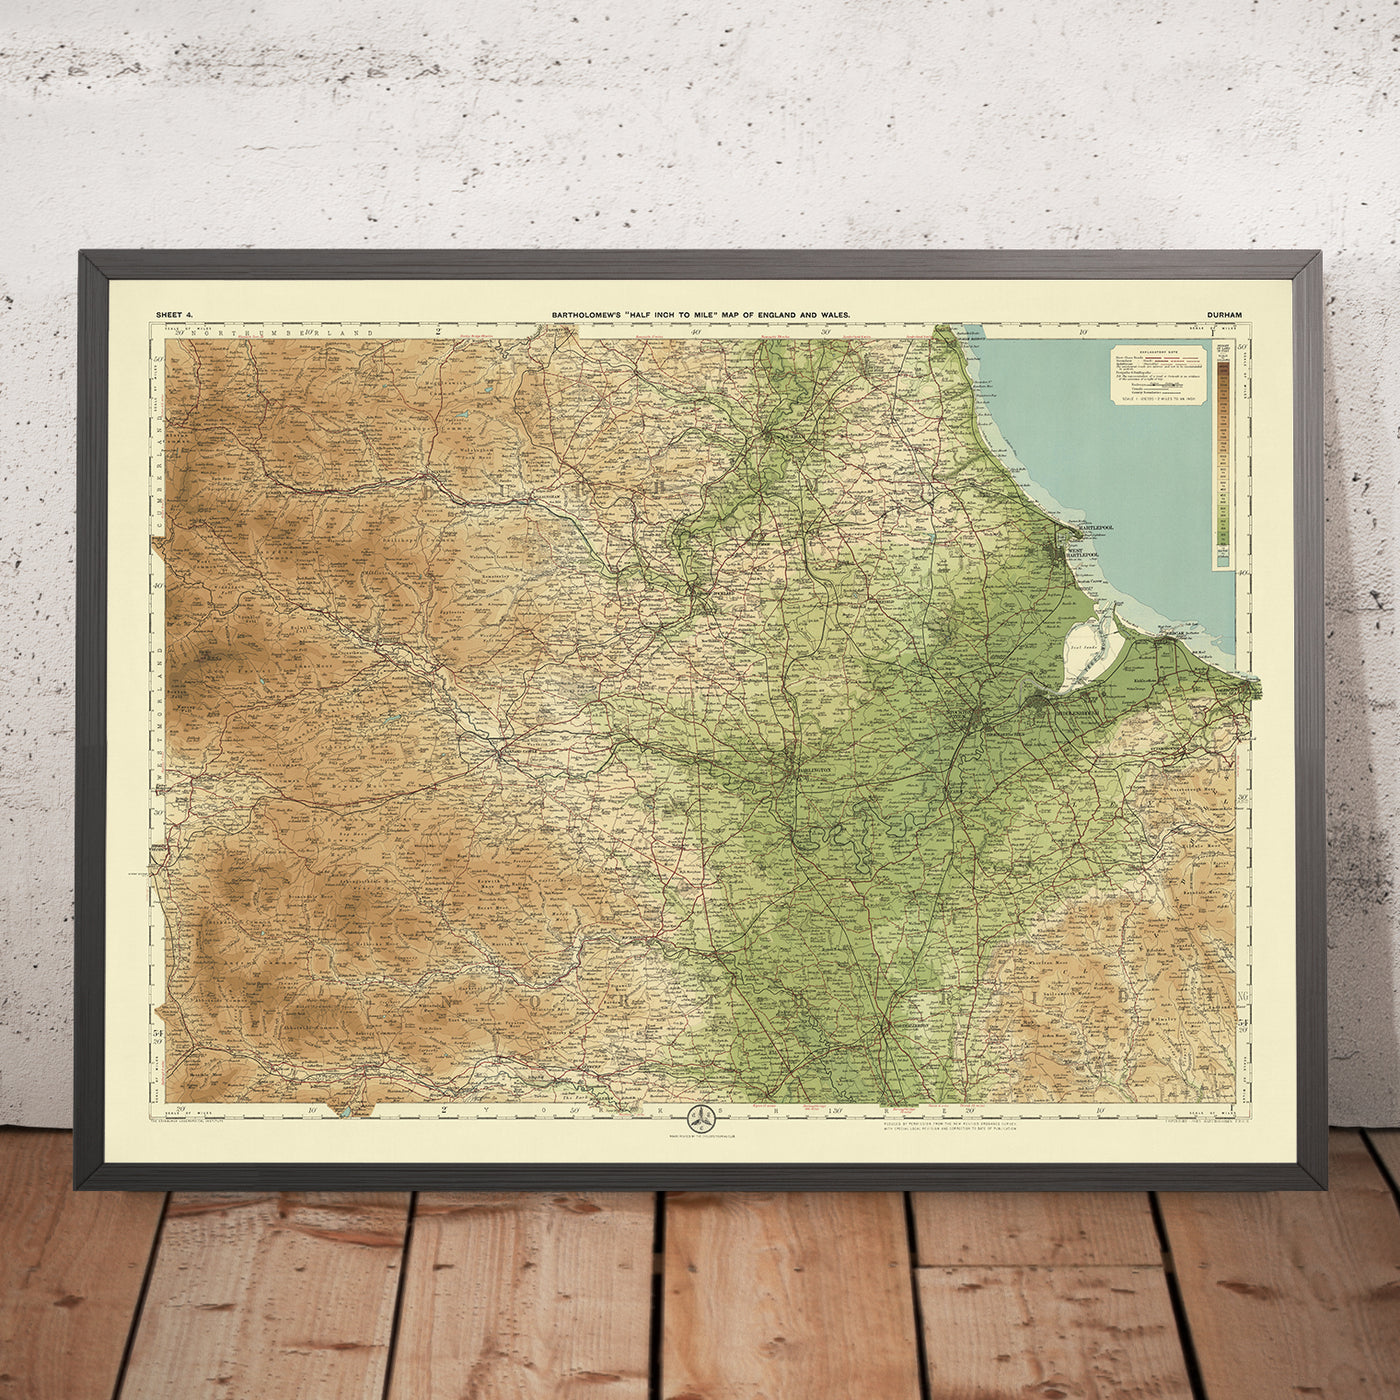 Antiguo mapa OS de Durham, Condado de Durham por Bartholomew, 1901: Durham, Sunderland, River Tees, Pennine Hills, High Force, Mar del Norte